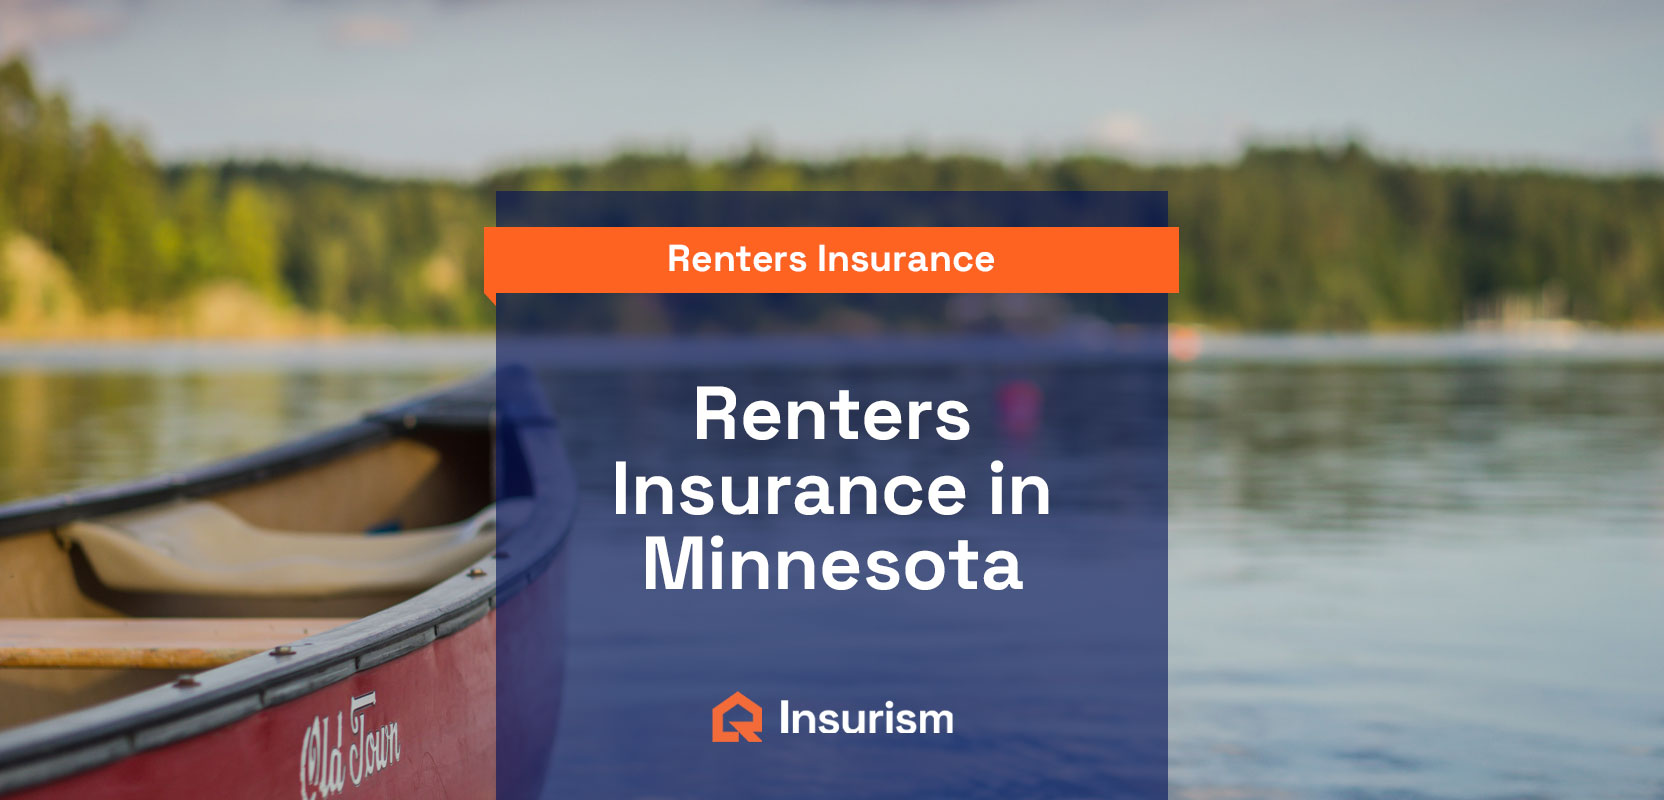 Renters insurance in Minnesota